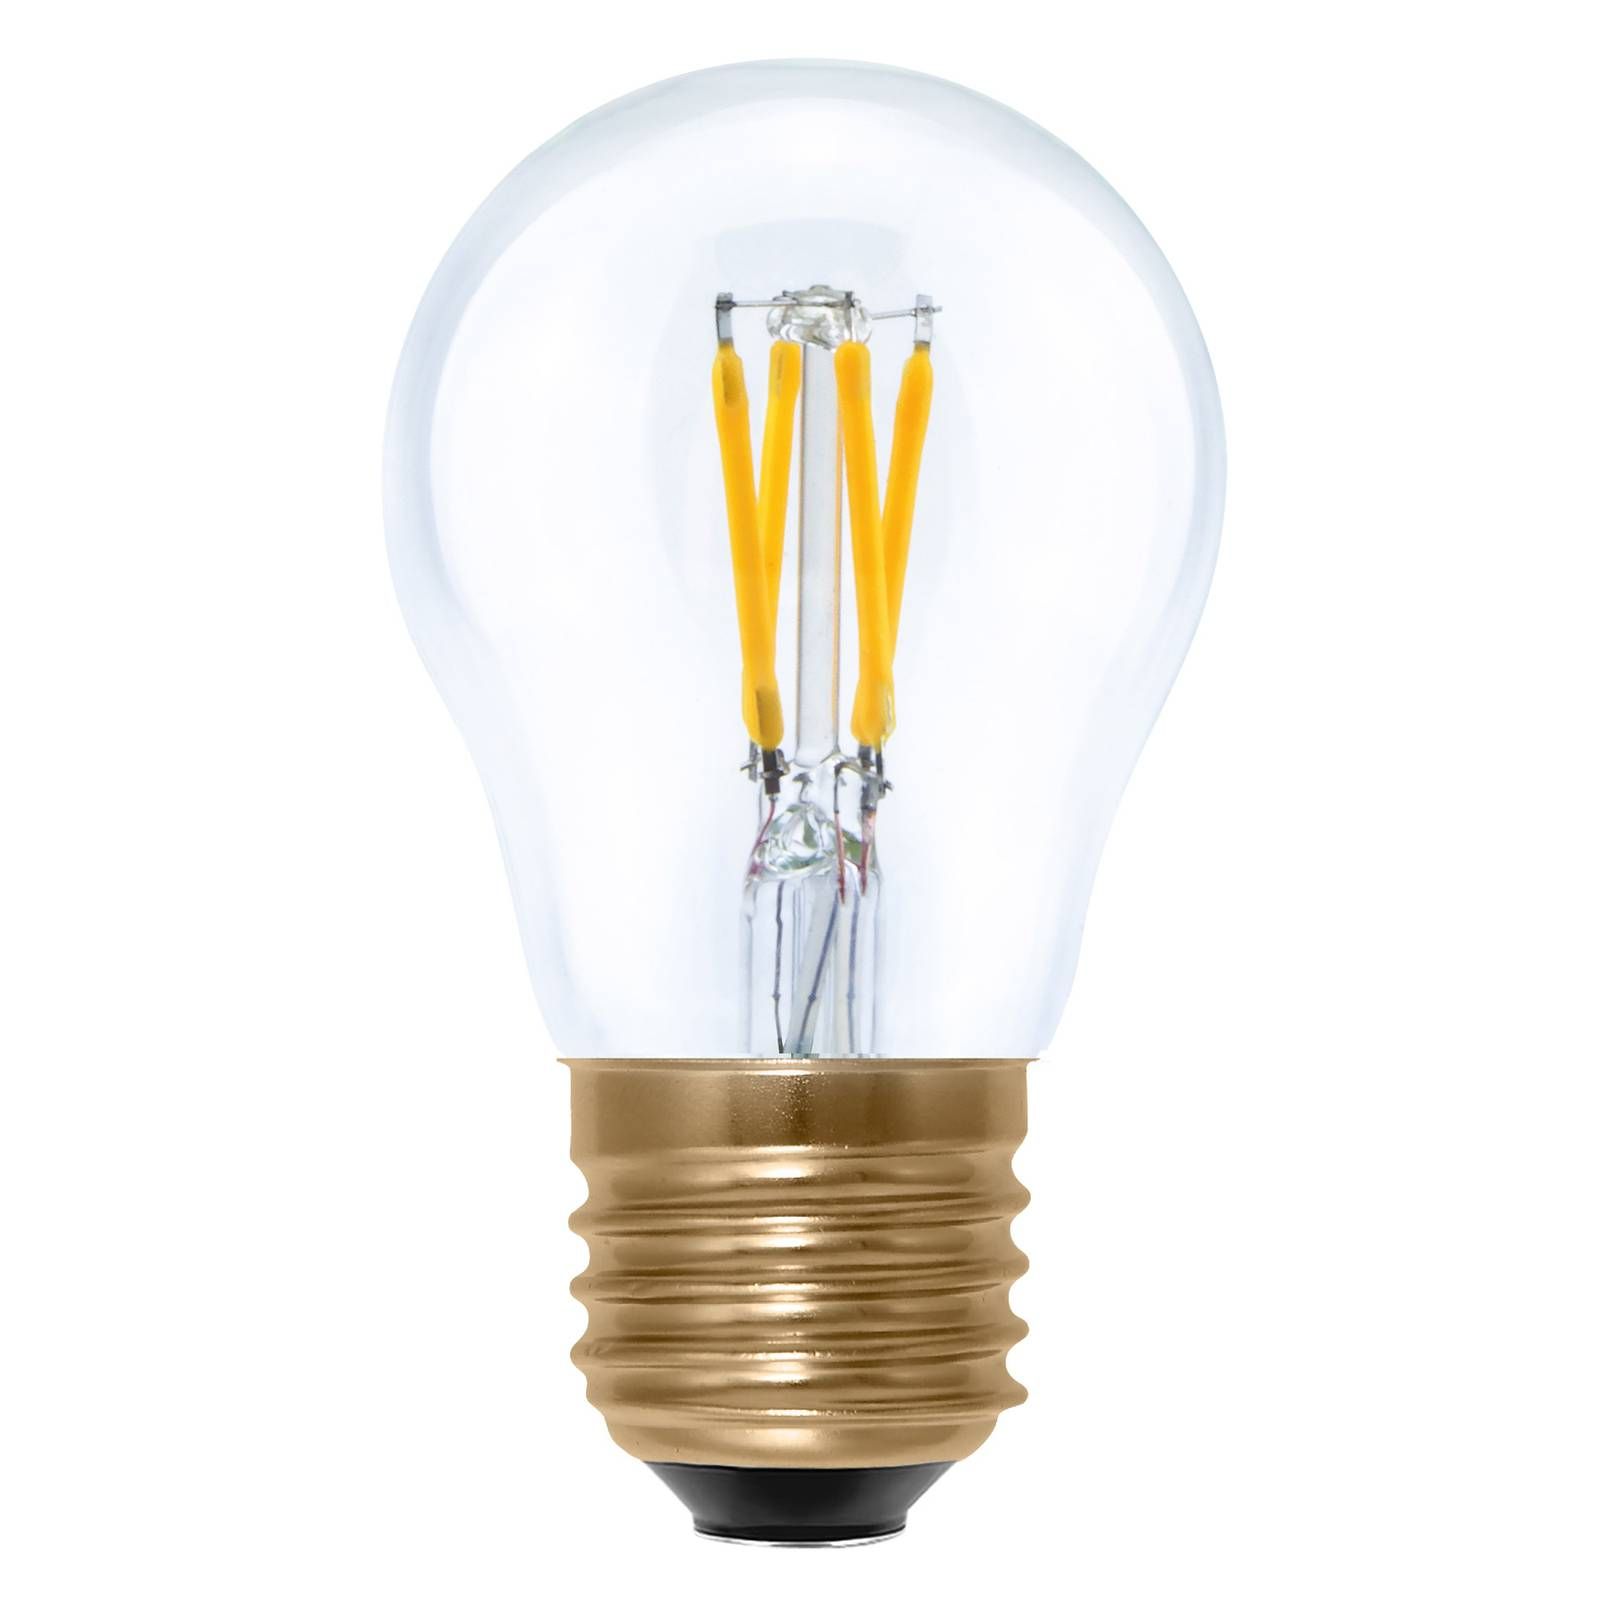 Segula SEGULA LED žiarovka A15 E27 3W stmievateľná číra, sklo, E27, 3W, Energialuokka: F, P: 8.5 cm